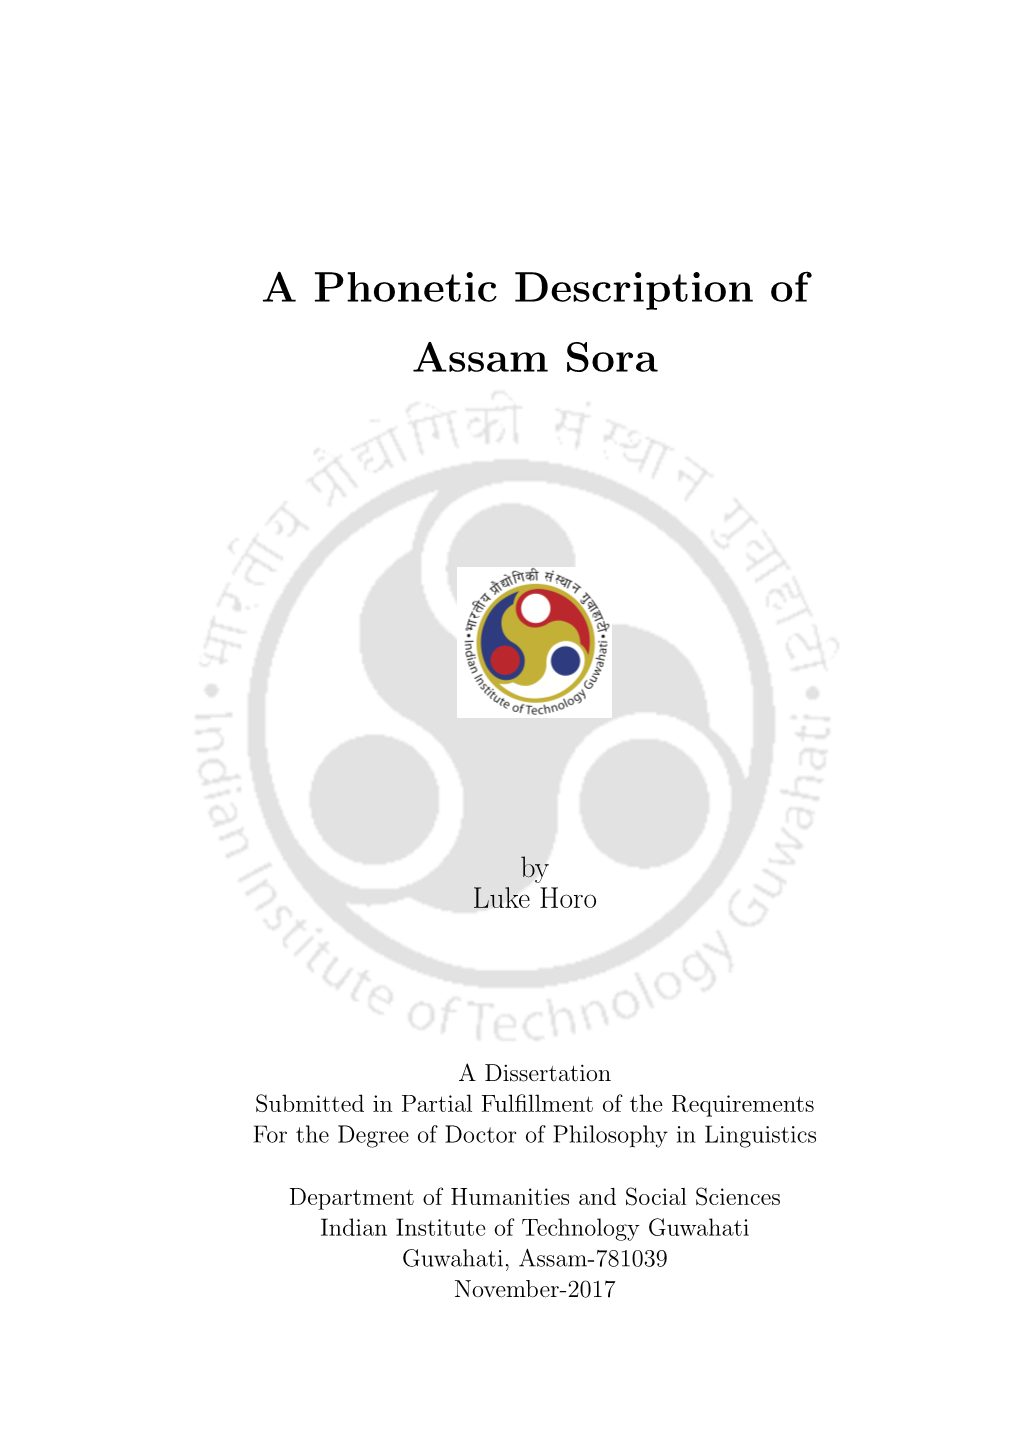 A Phonetic Description of Assam Sora